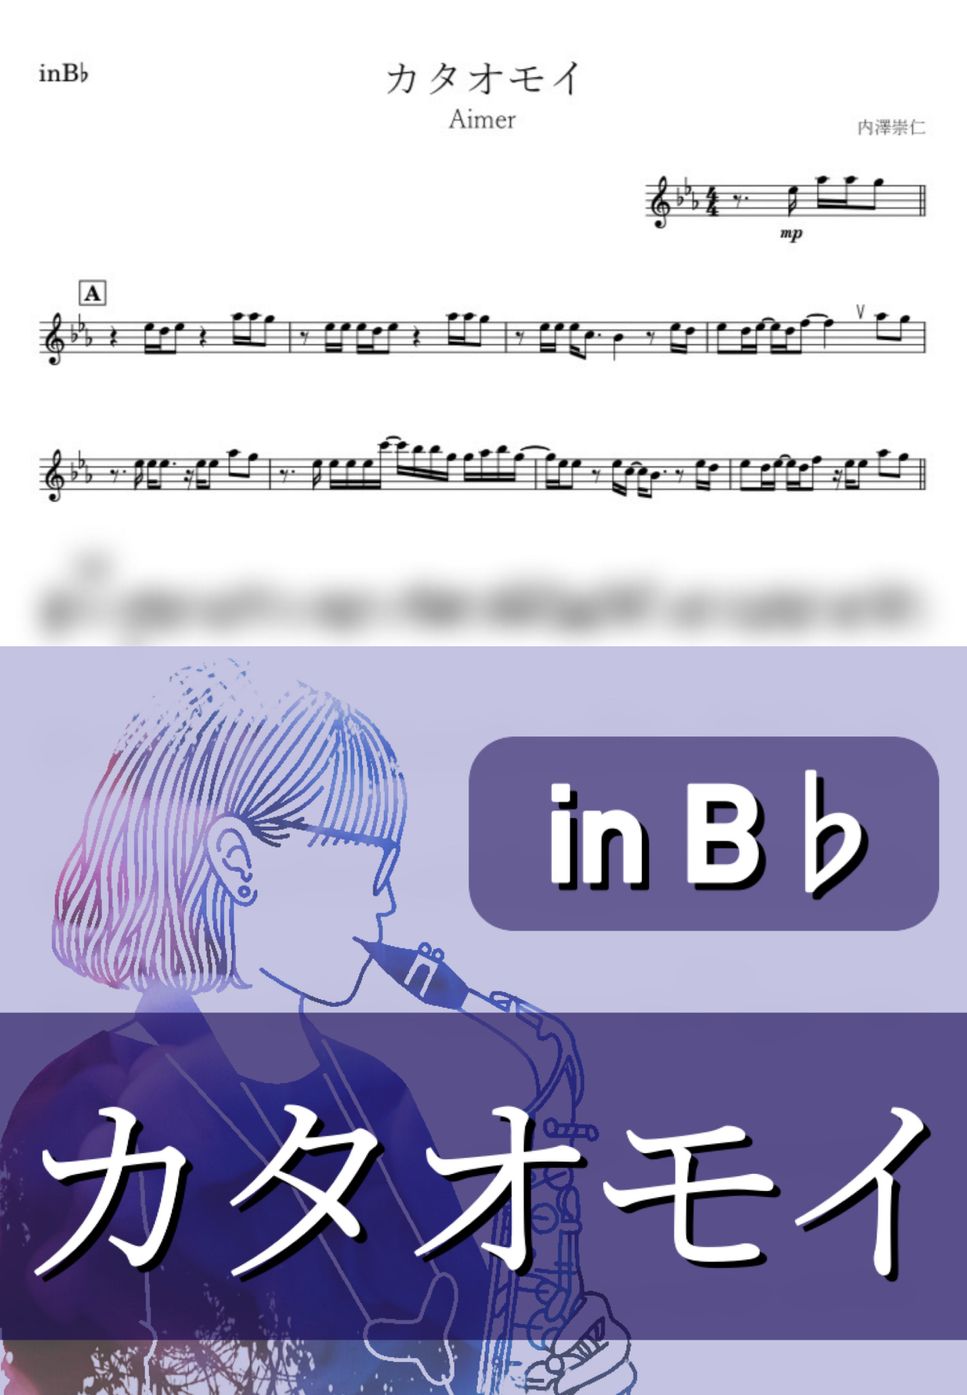 Aimer - カタオモイ (B♭) by kanamusic